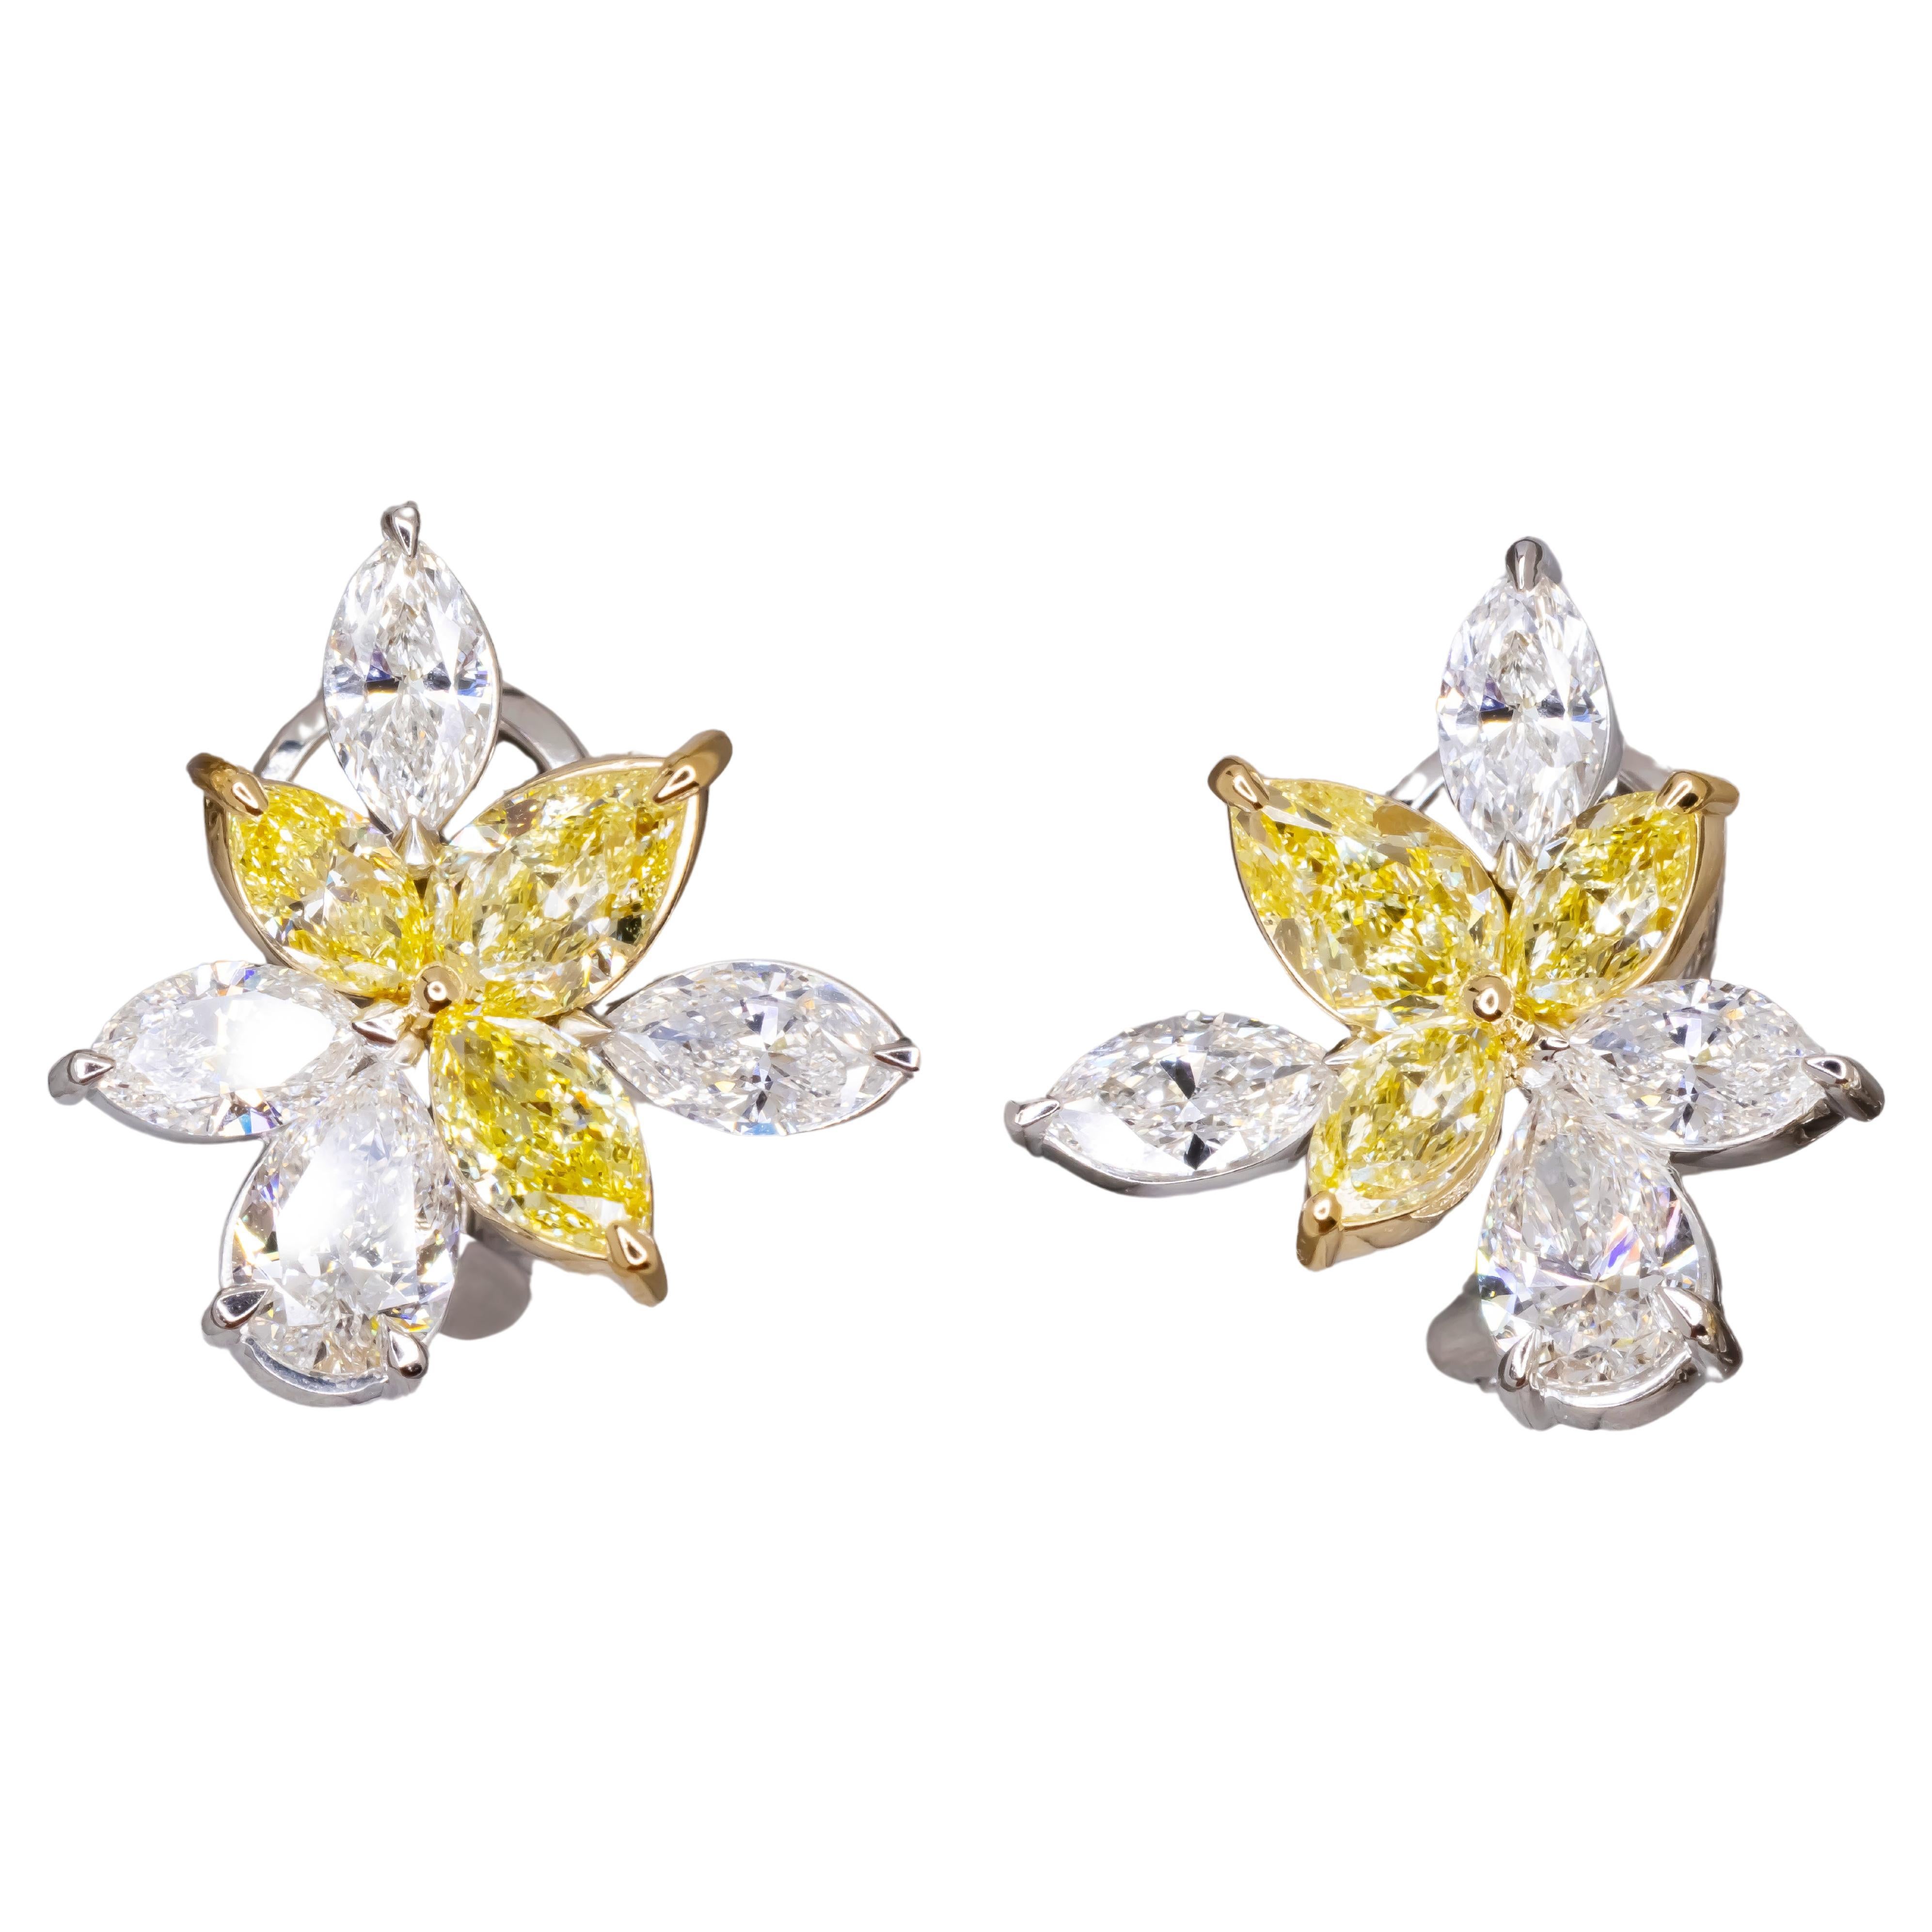 Boucles d'oreilles en platine avec grappe de diamants certifiés GIA de 5,60 carats de couleur jaune blanc fantaisie